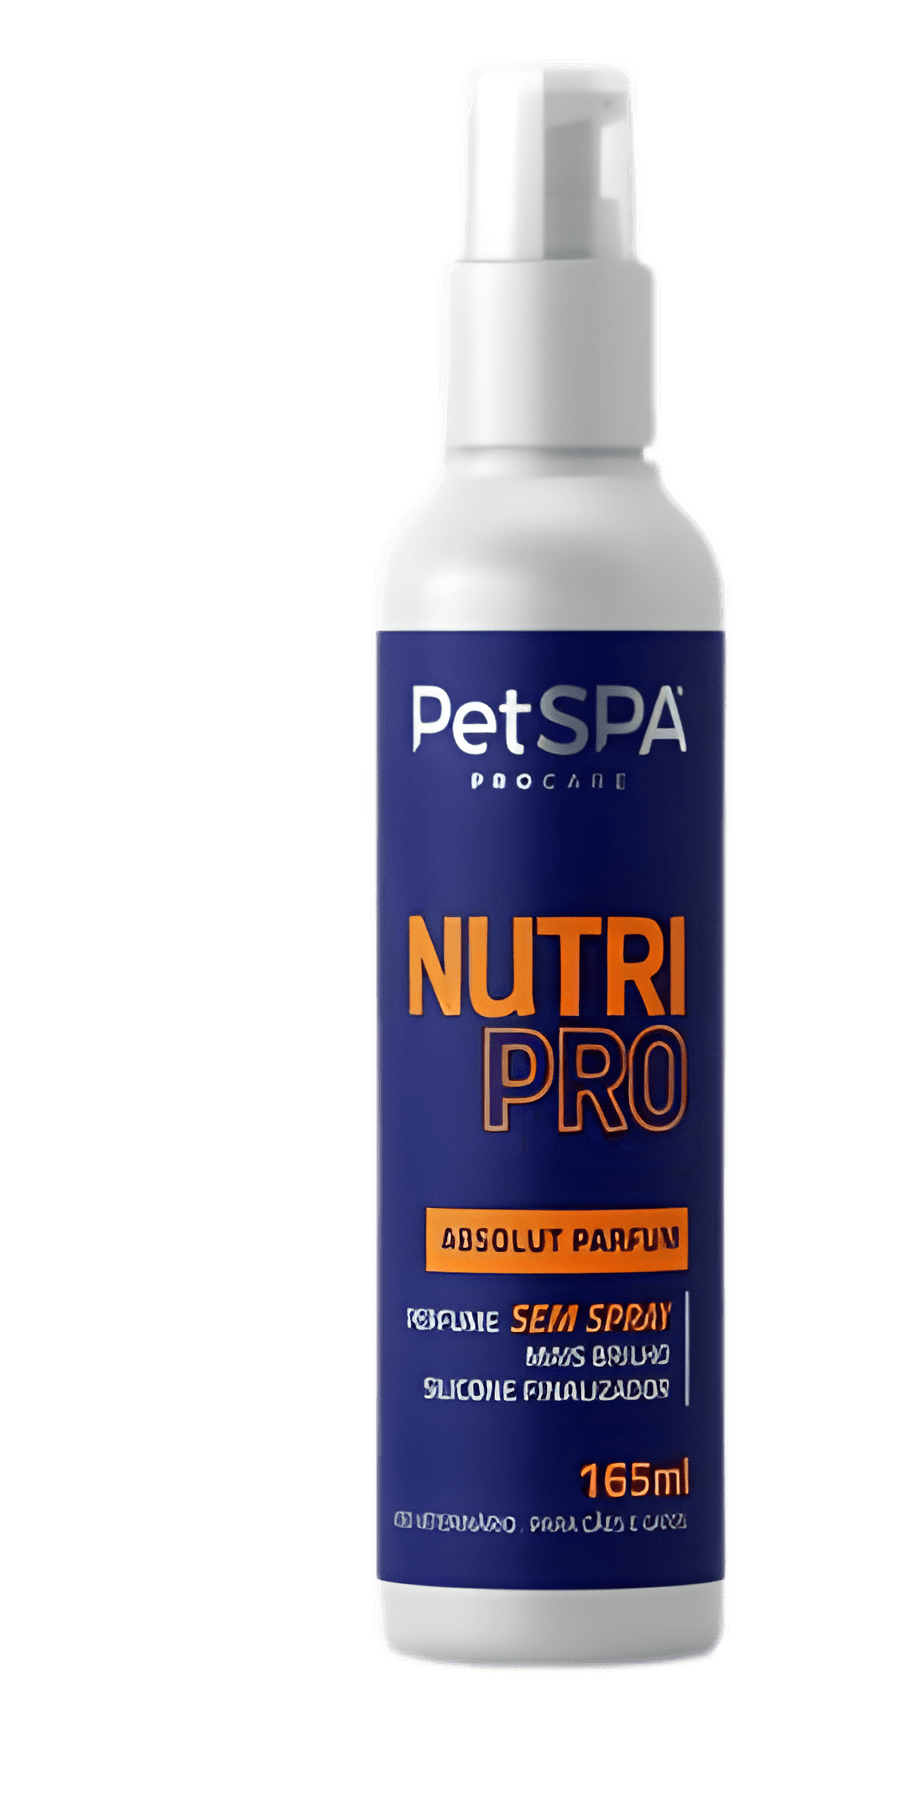 PERFUME ABSOLUT PARFUM NUTRI PRO 165ML - PETSPA